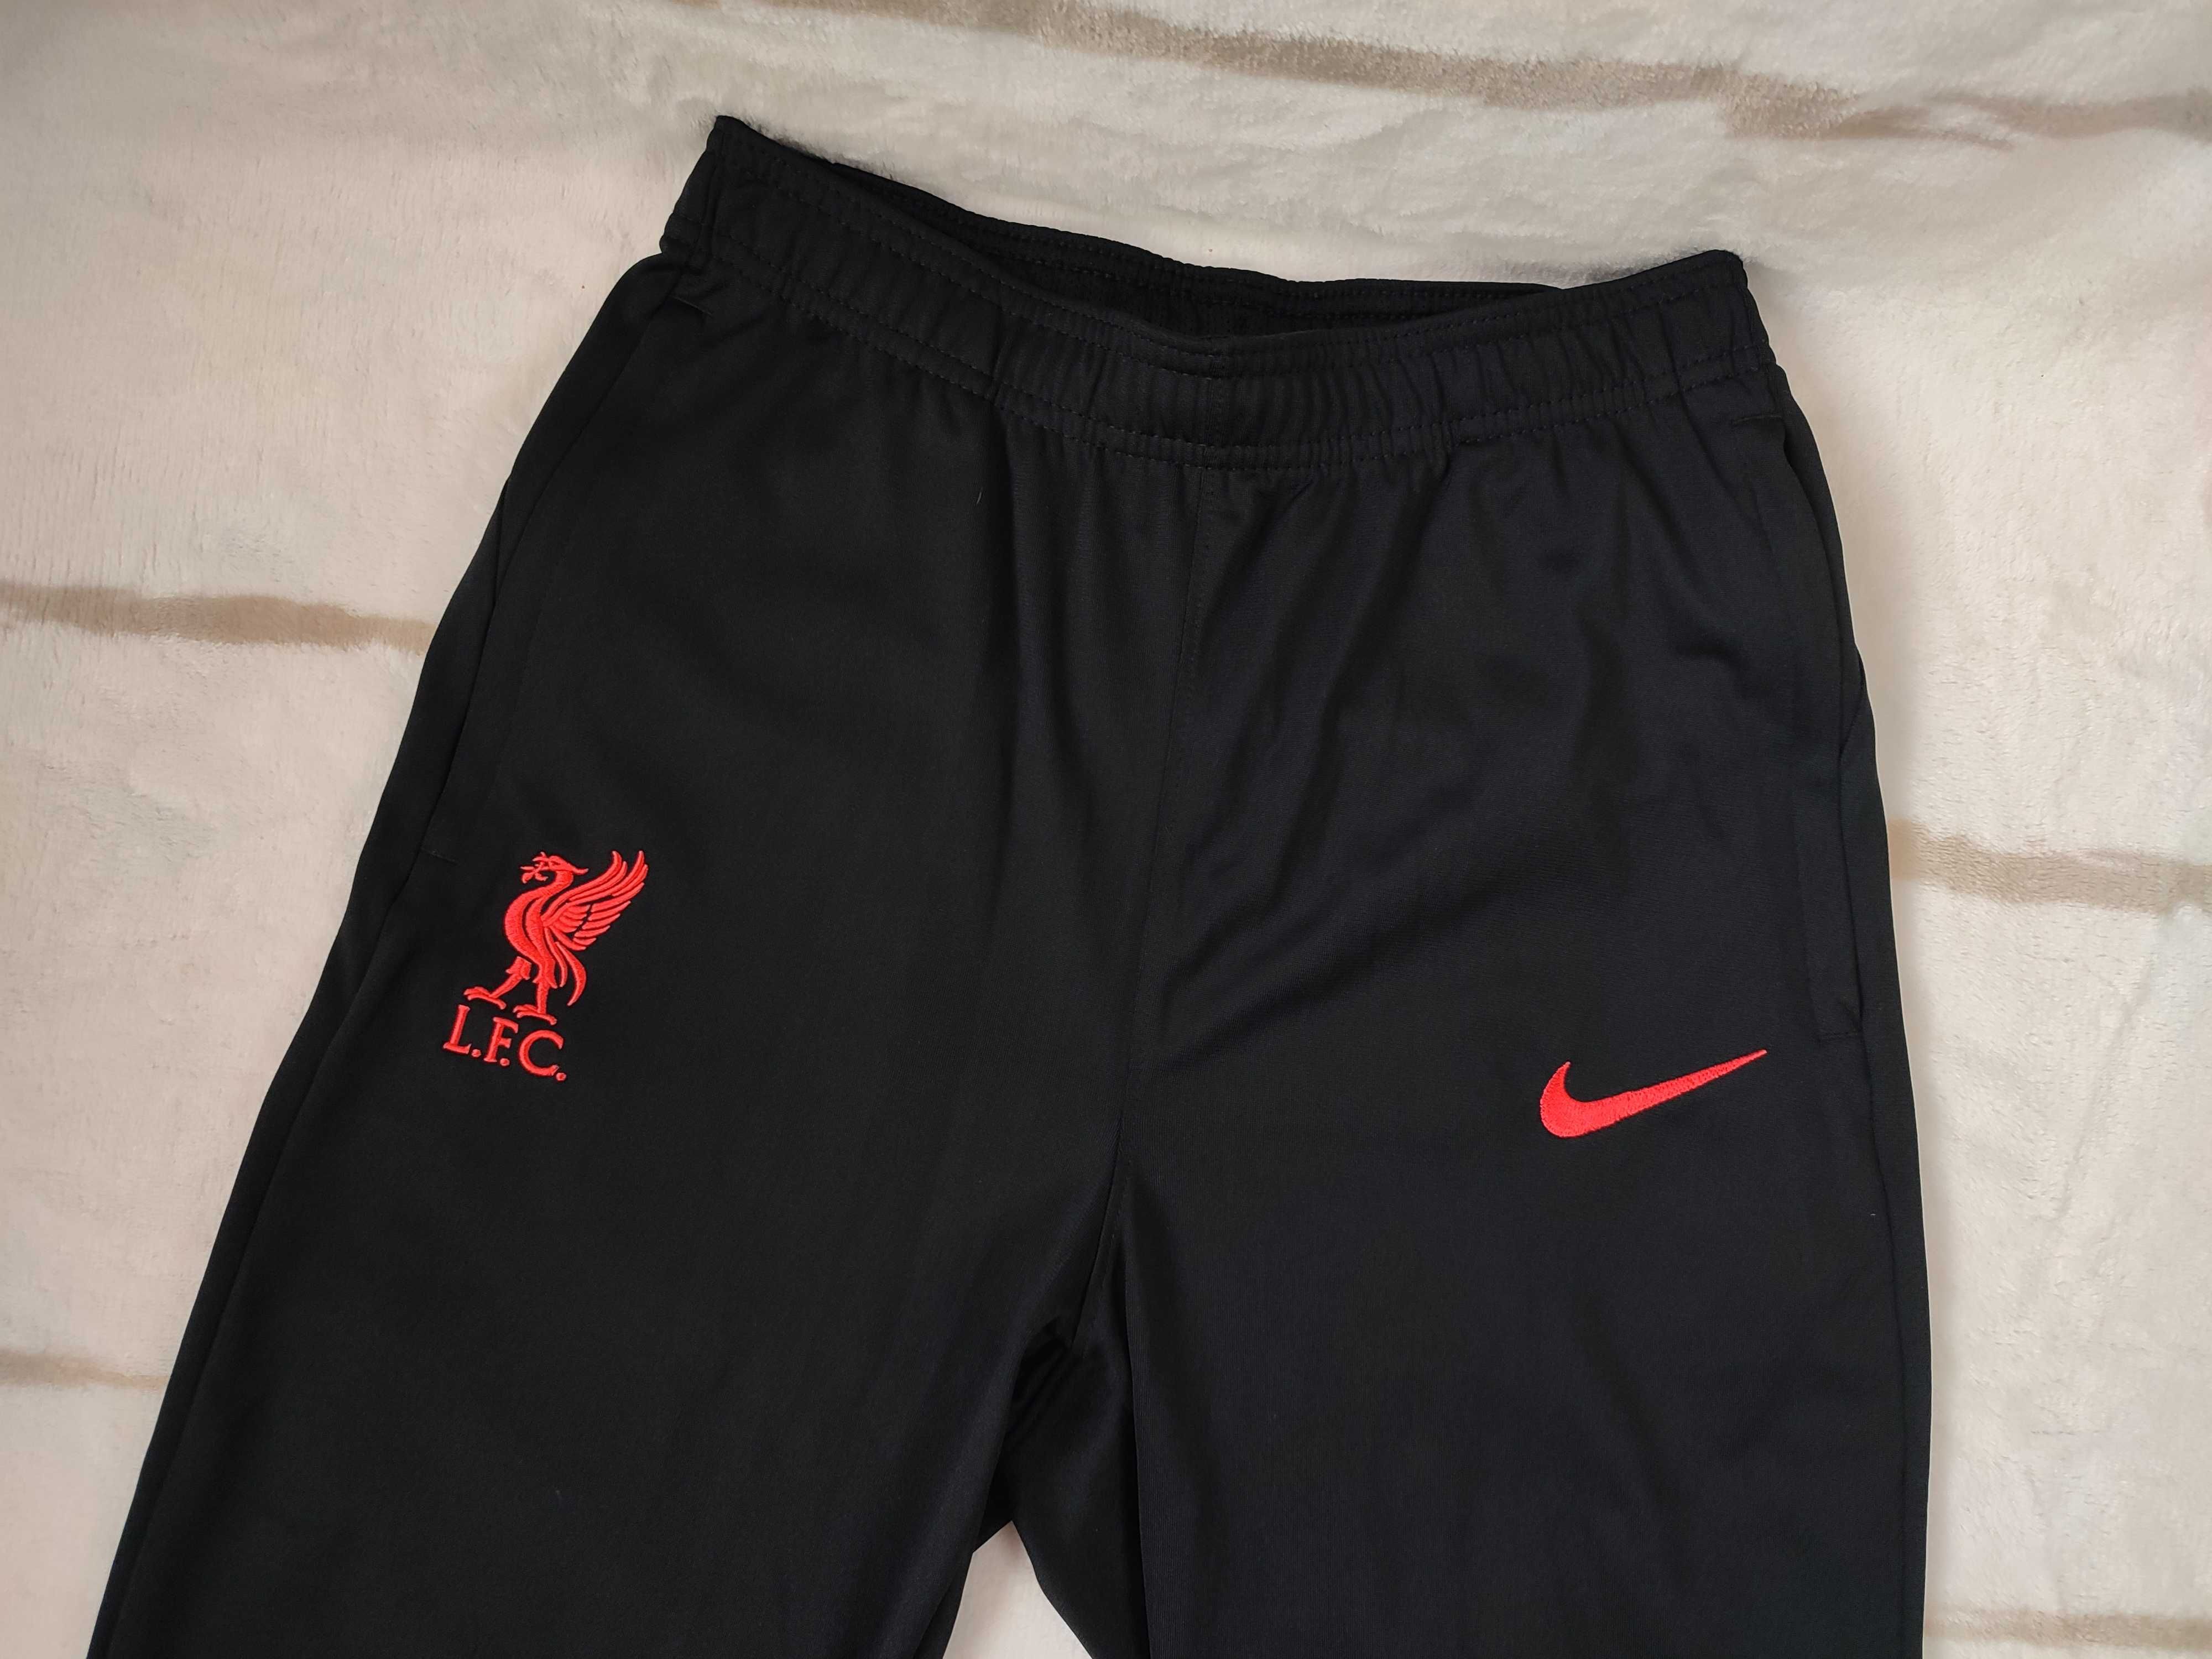 Ливерпуль l.f.c. Nike DRI-FIT спортивный костюм, 158-170 см (XL)